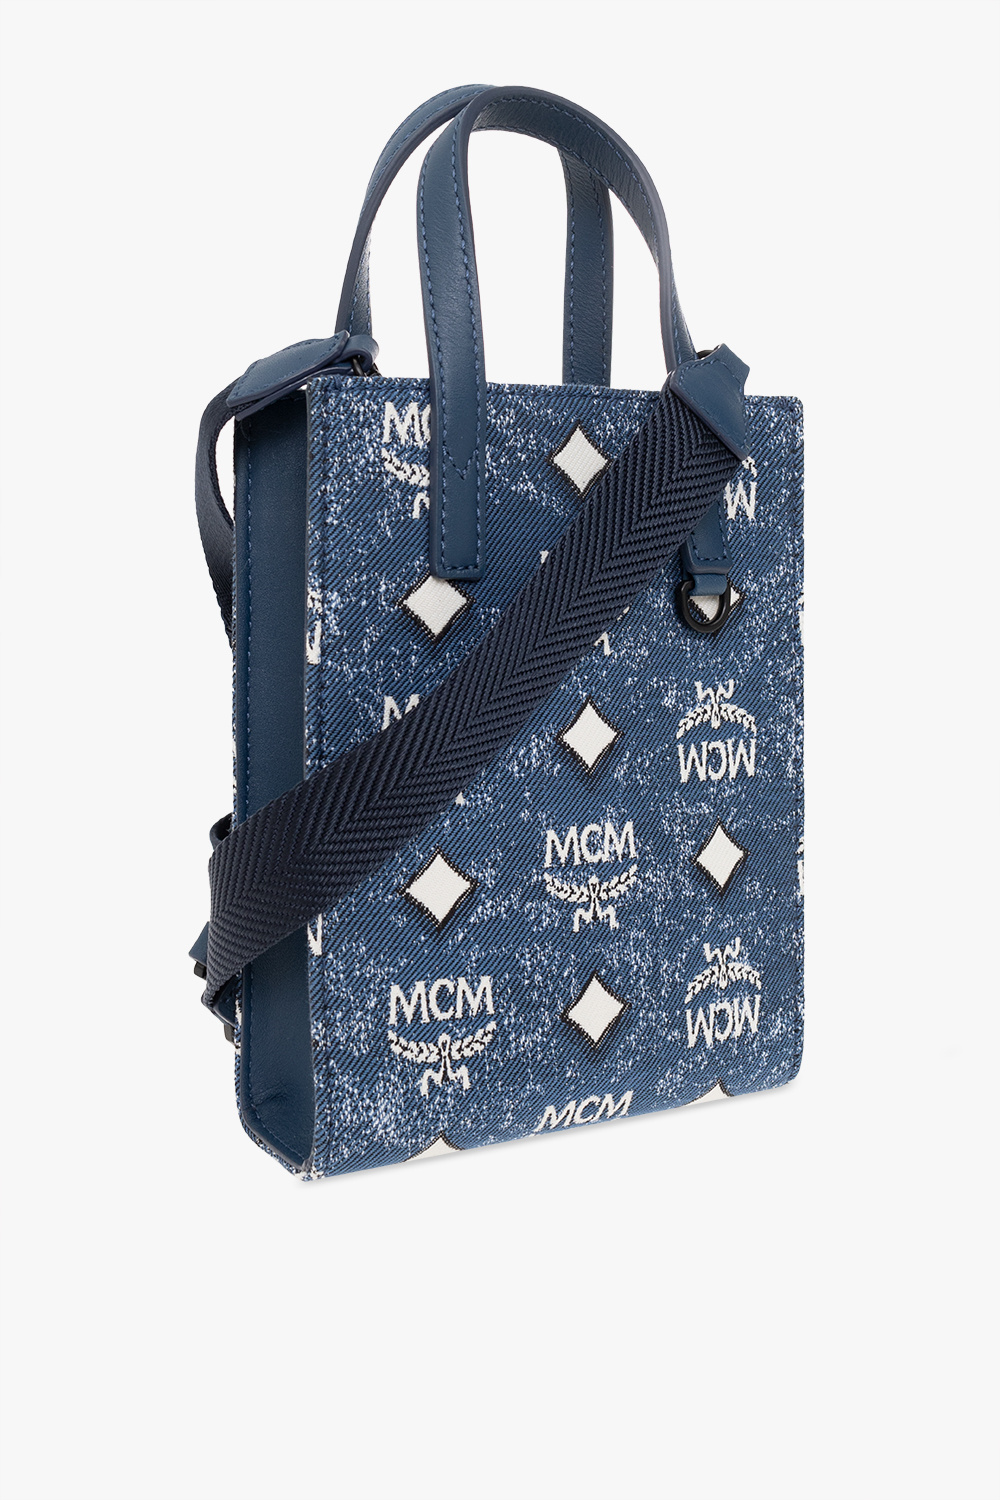 MCM Shoulder bag with monogram